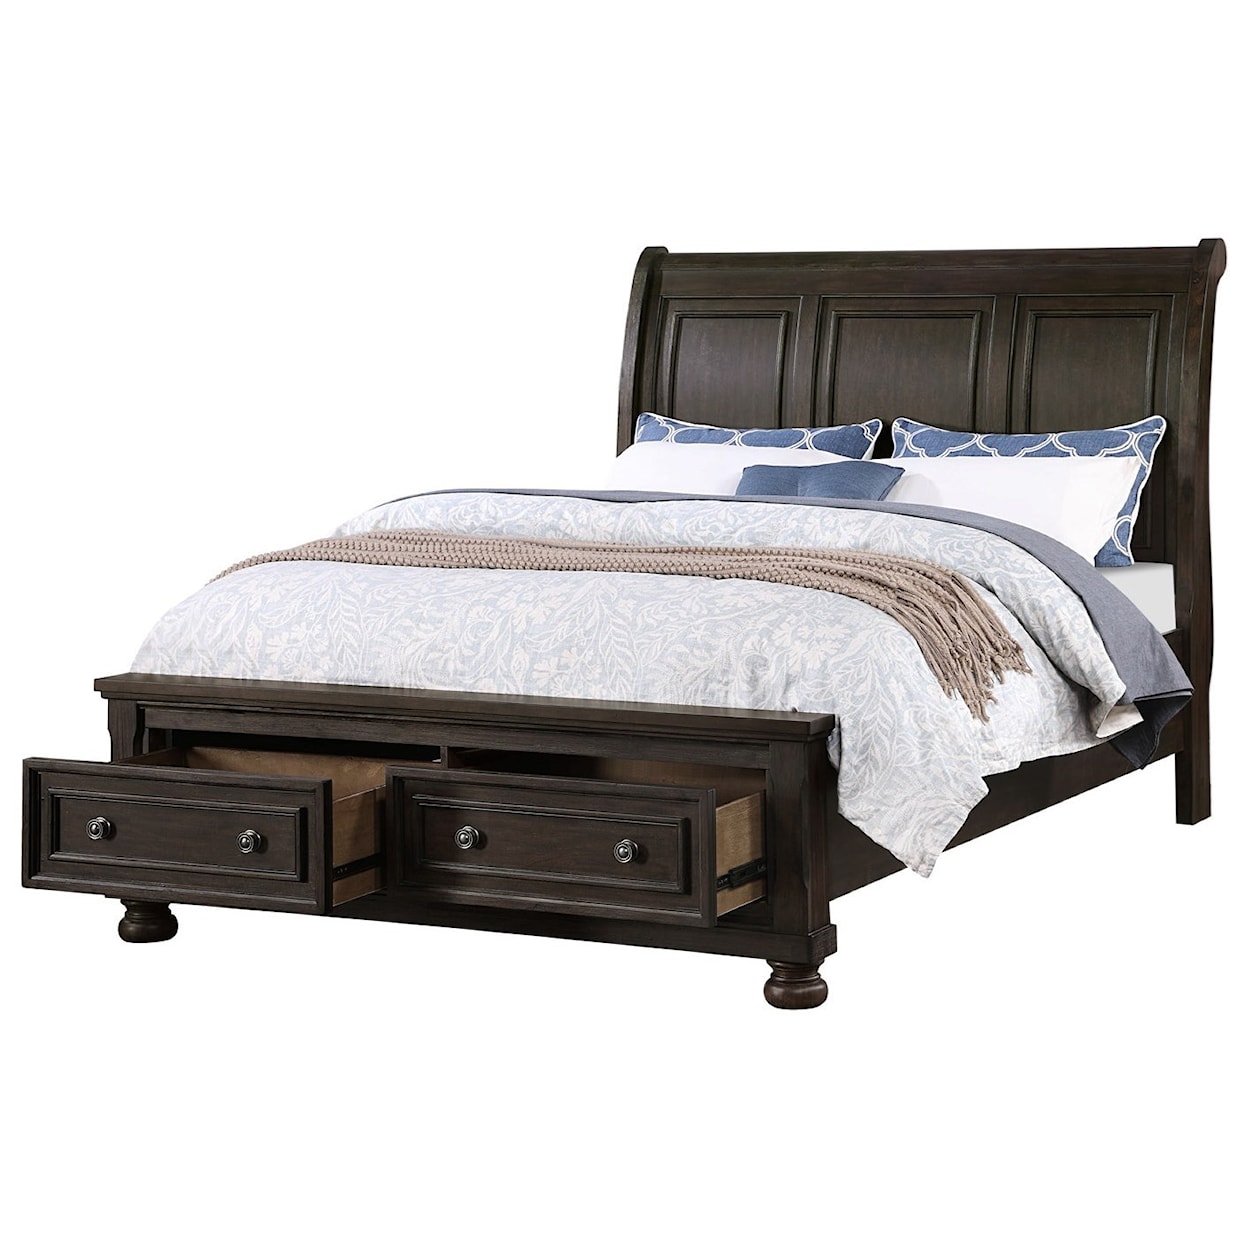 Avalon Furniture B02255 Queen Sleigh Storage Bed